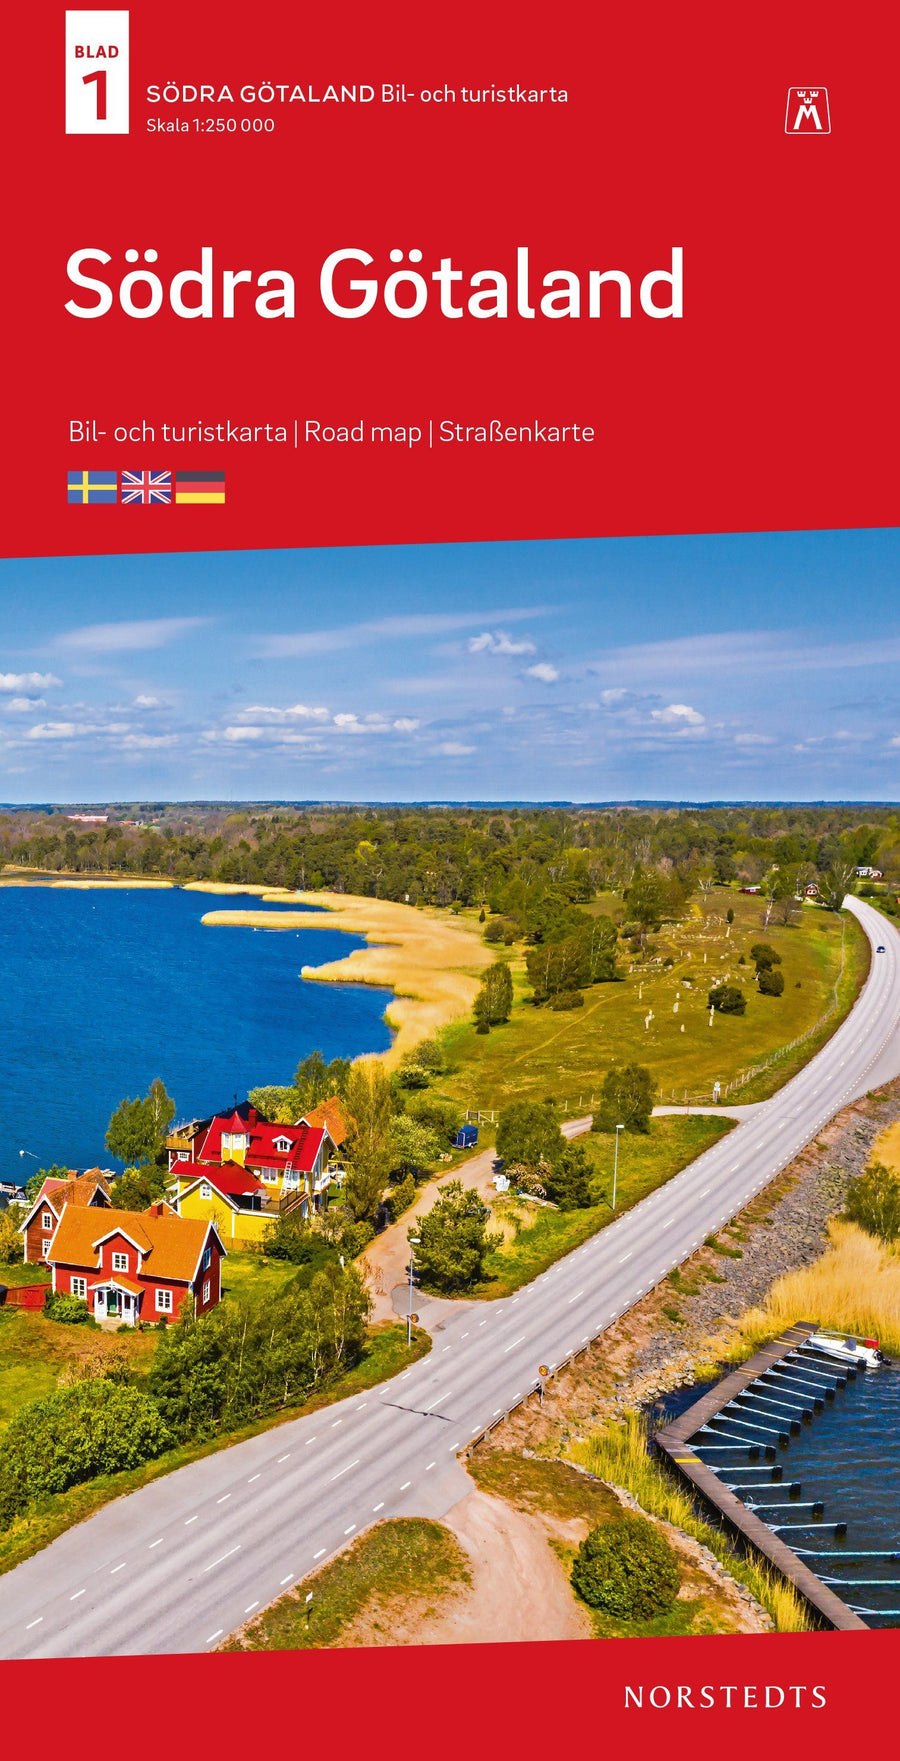 Carte routière n° 1 - Suède du Sud | Norstedts carte pliée Norstedts 